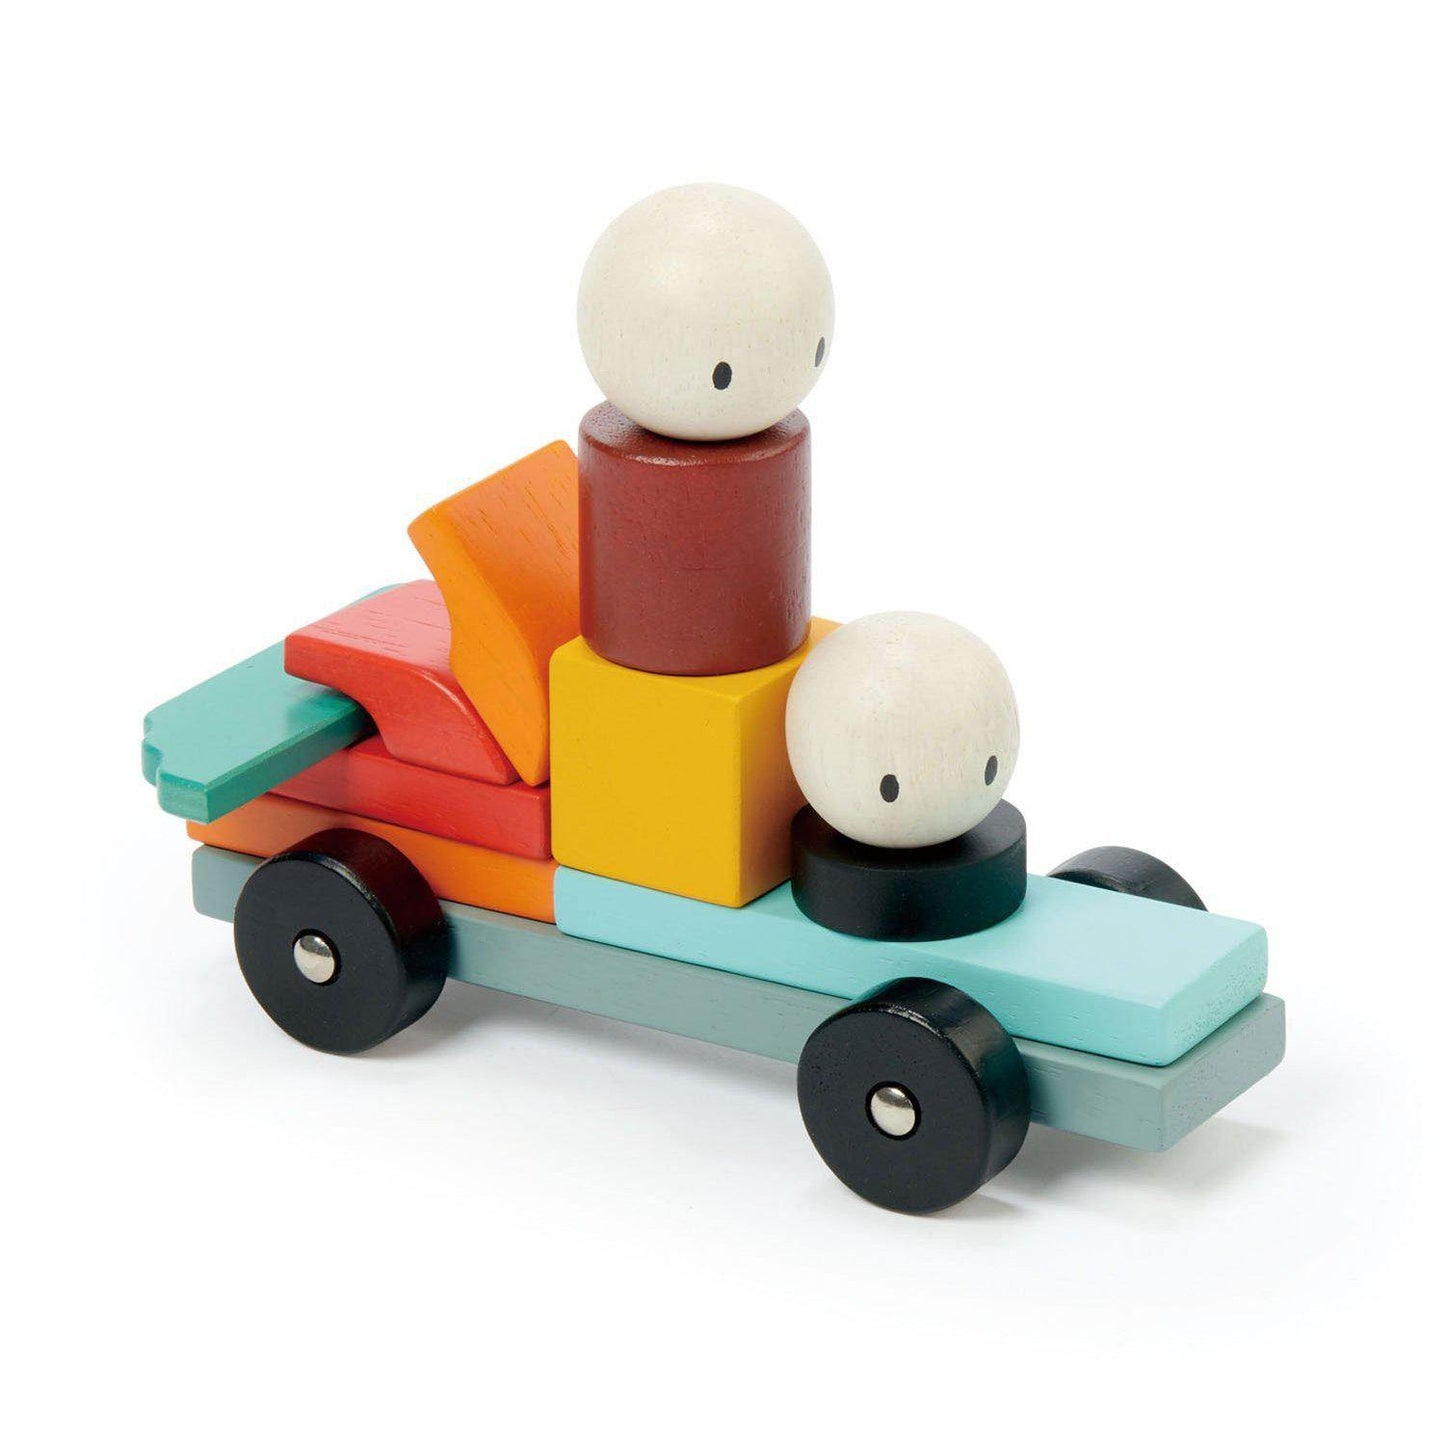 Racing Magblocks mágneses építő játék, prémium minőségű fából - Racing Magblocs - 14 darab -Tender Leaf Toys-Tender Leaf Toys-3-Játszma.ro - A maradandó élmények boltja